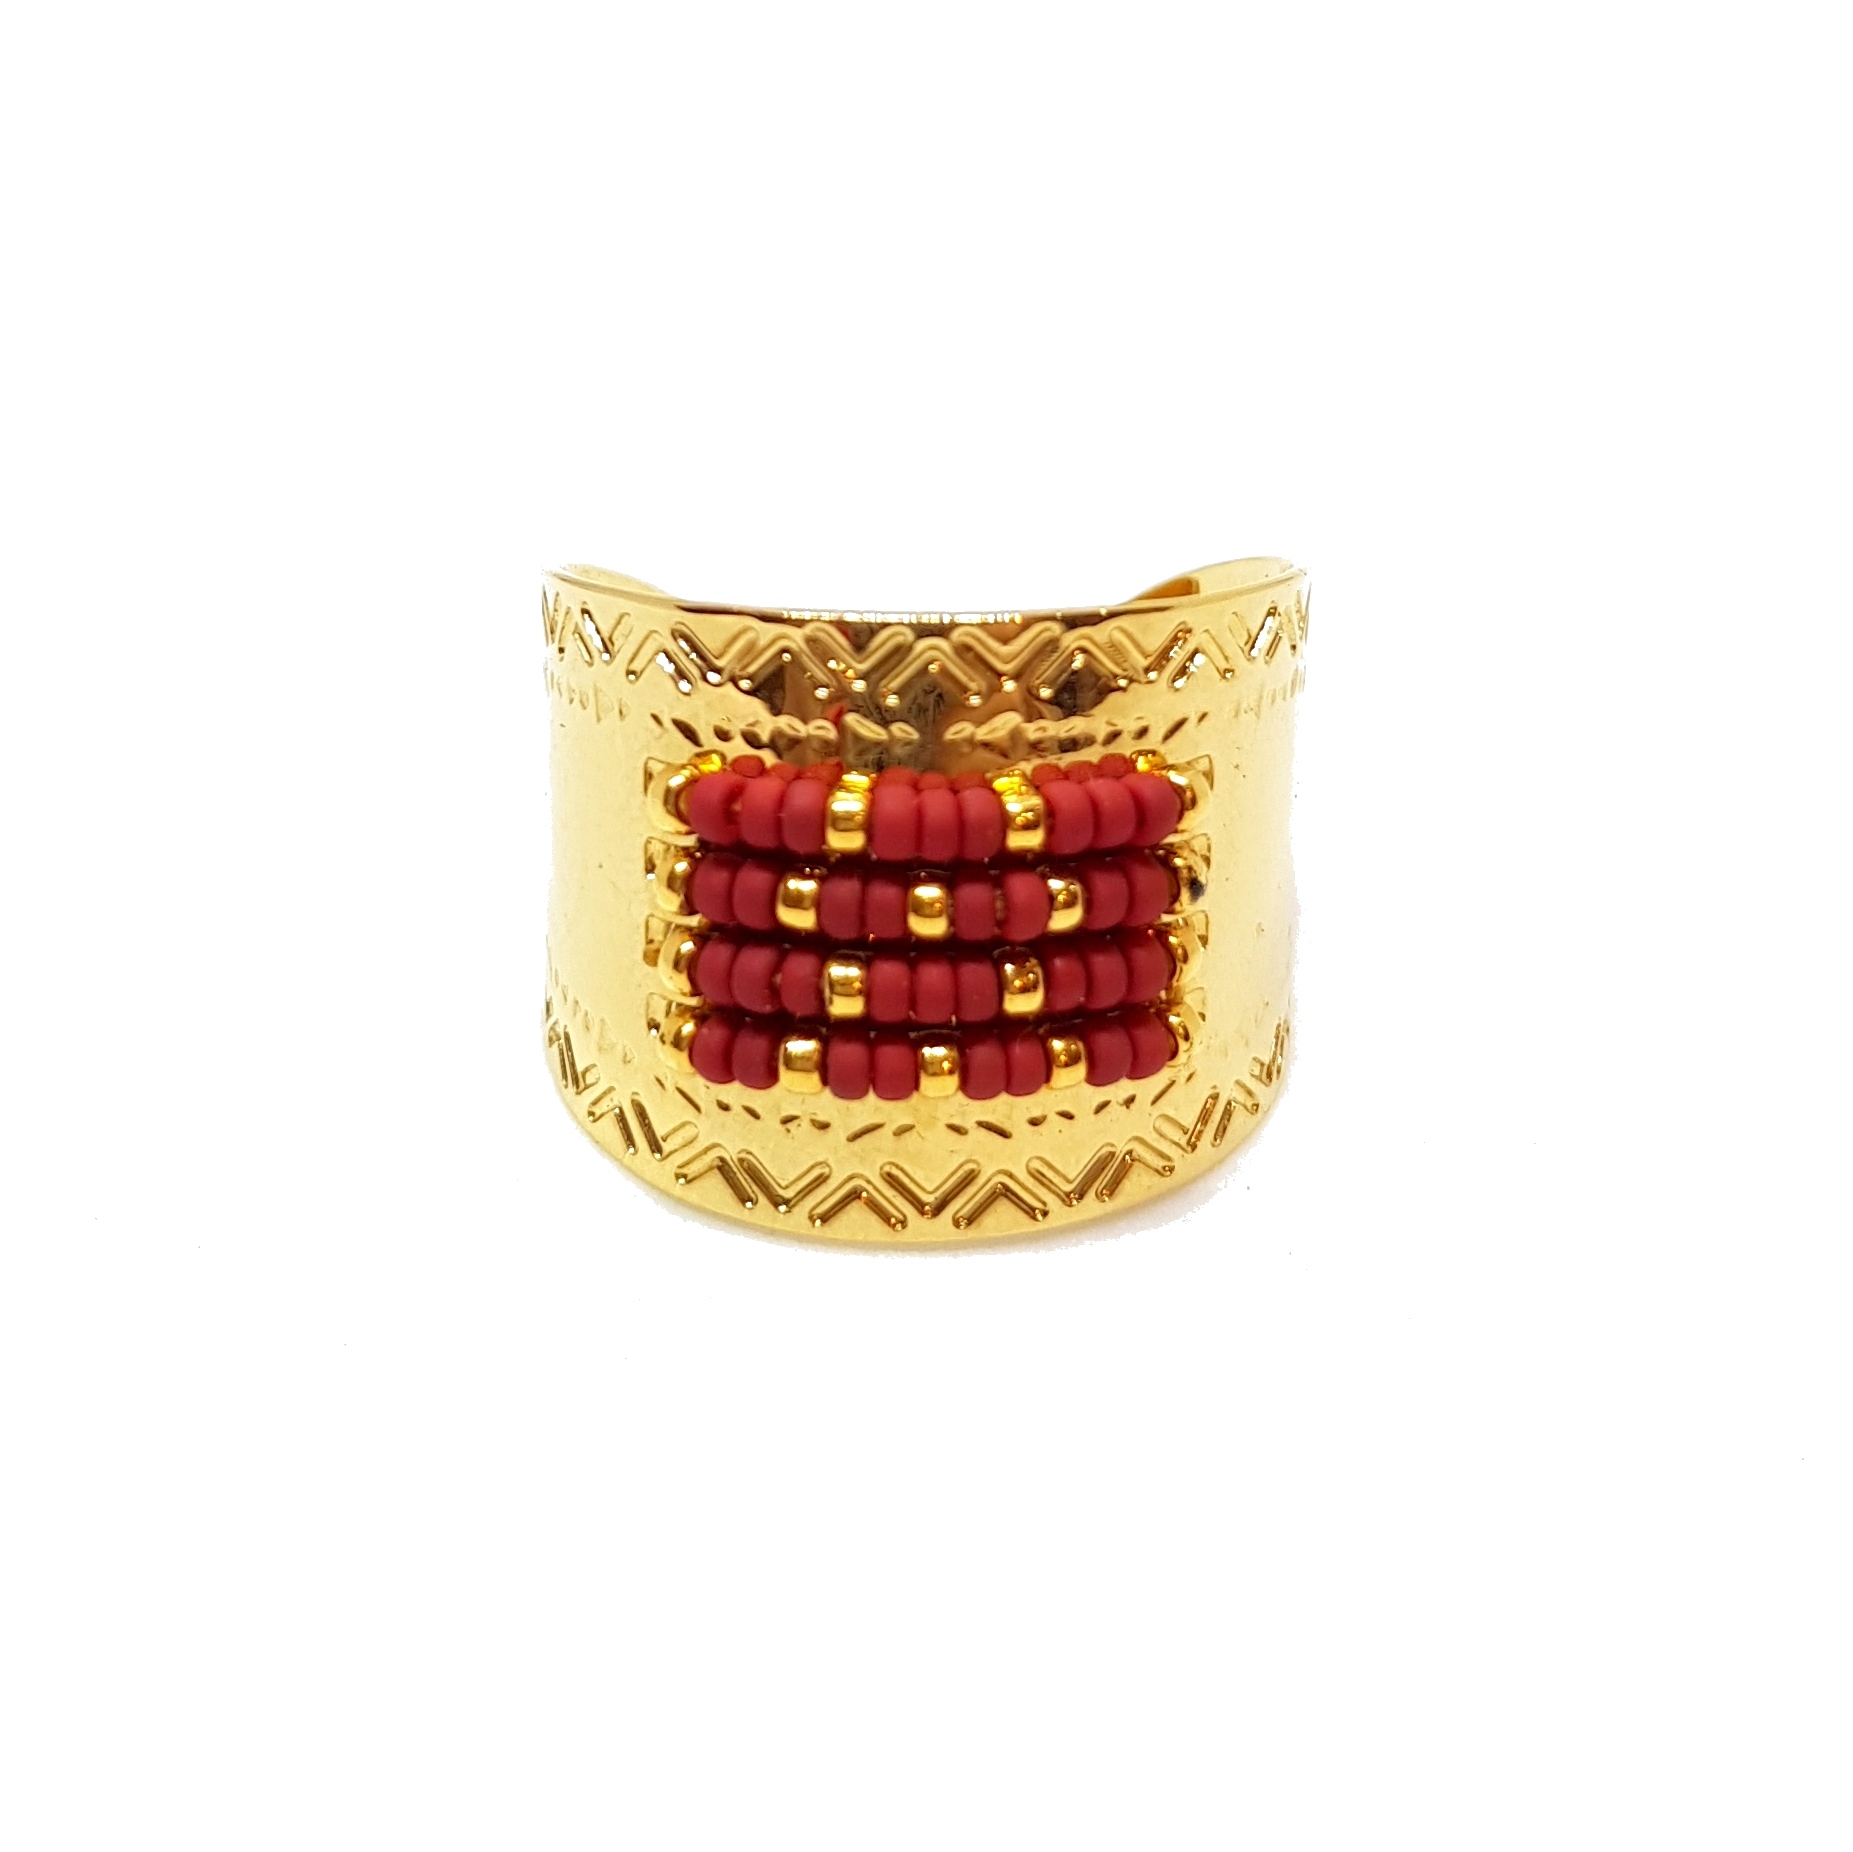 LBCnss1vW1s_bague-icate-rouge-brique-ccedille-bijoux-createur-ethnique.jpg